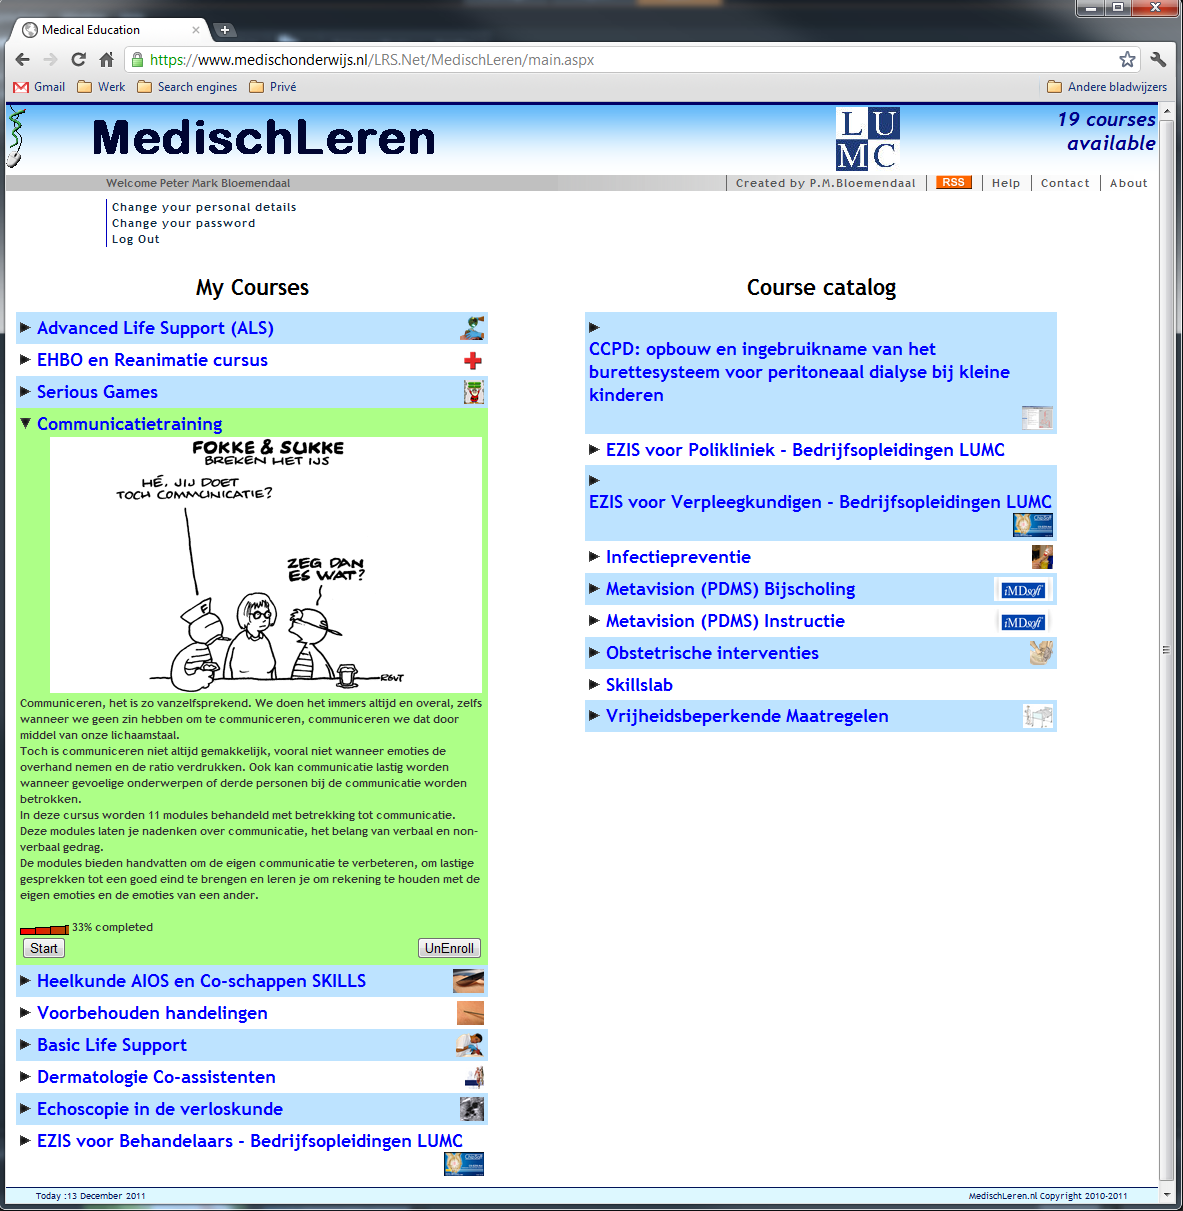 MedischLeren.nl maakt gebruik van dezelfde database als MedischOnderwijs.nl. Hierdoor hoeven gebruikers die al een account hebben op MedischOnderwijs.